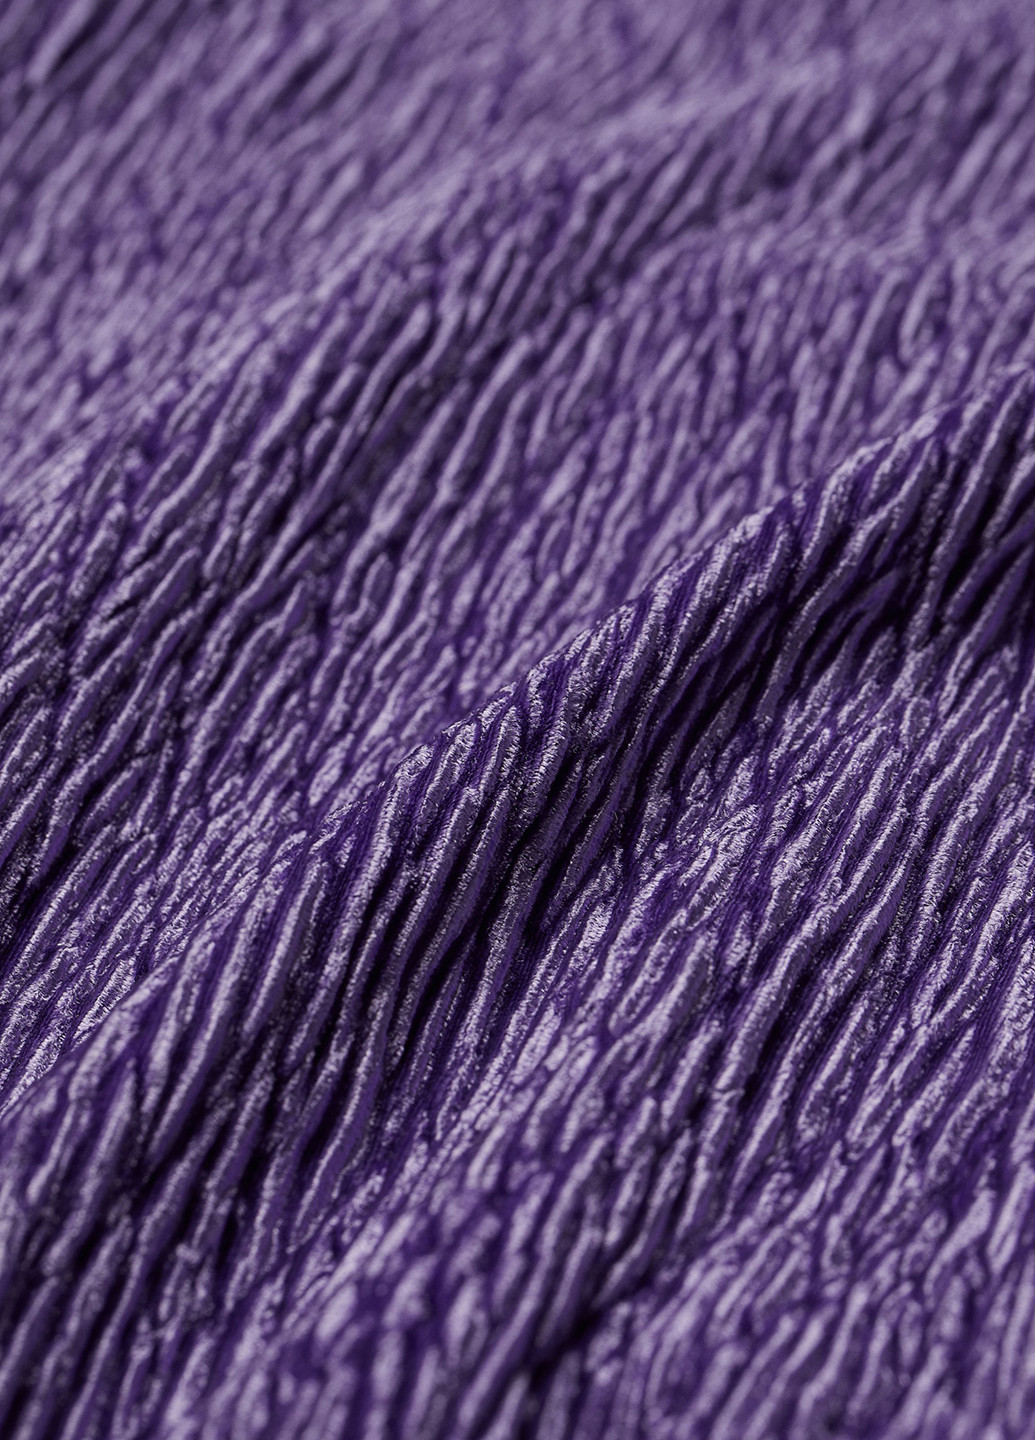 Фиолетовое коктейльное платье H&M однотонное